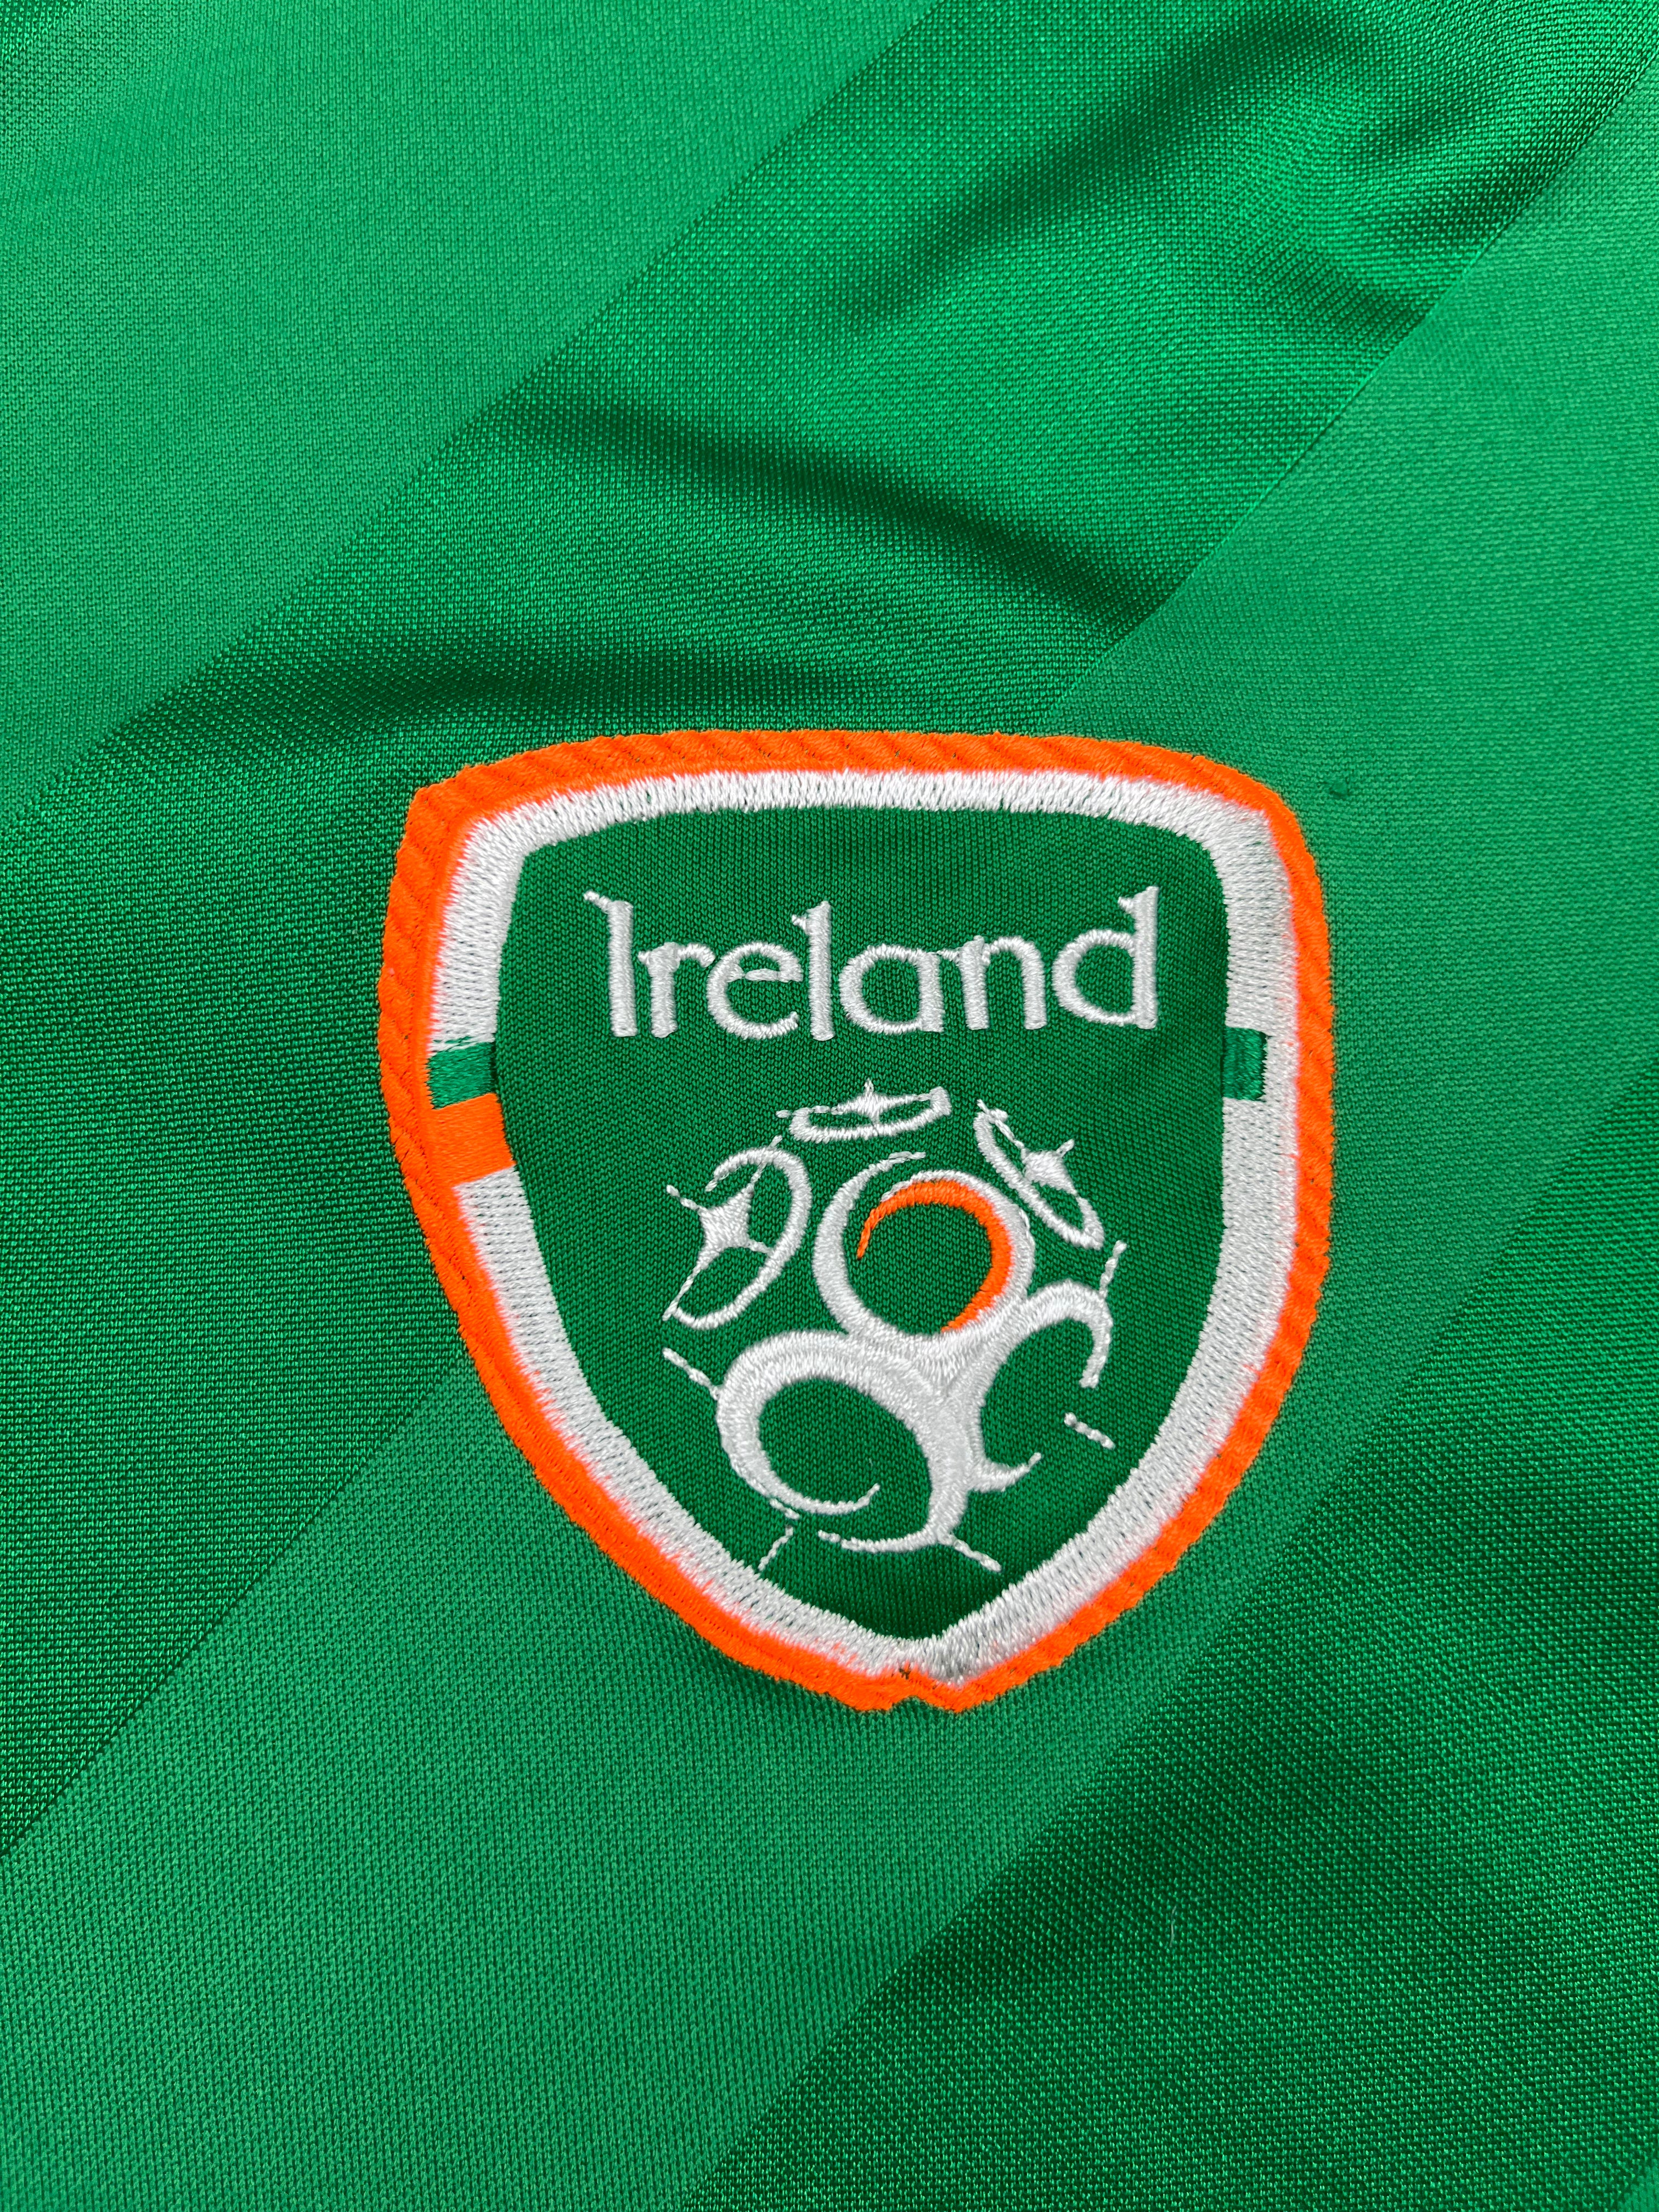 2016/17 Ireland Home Shirt (XL) 6/10